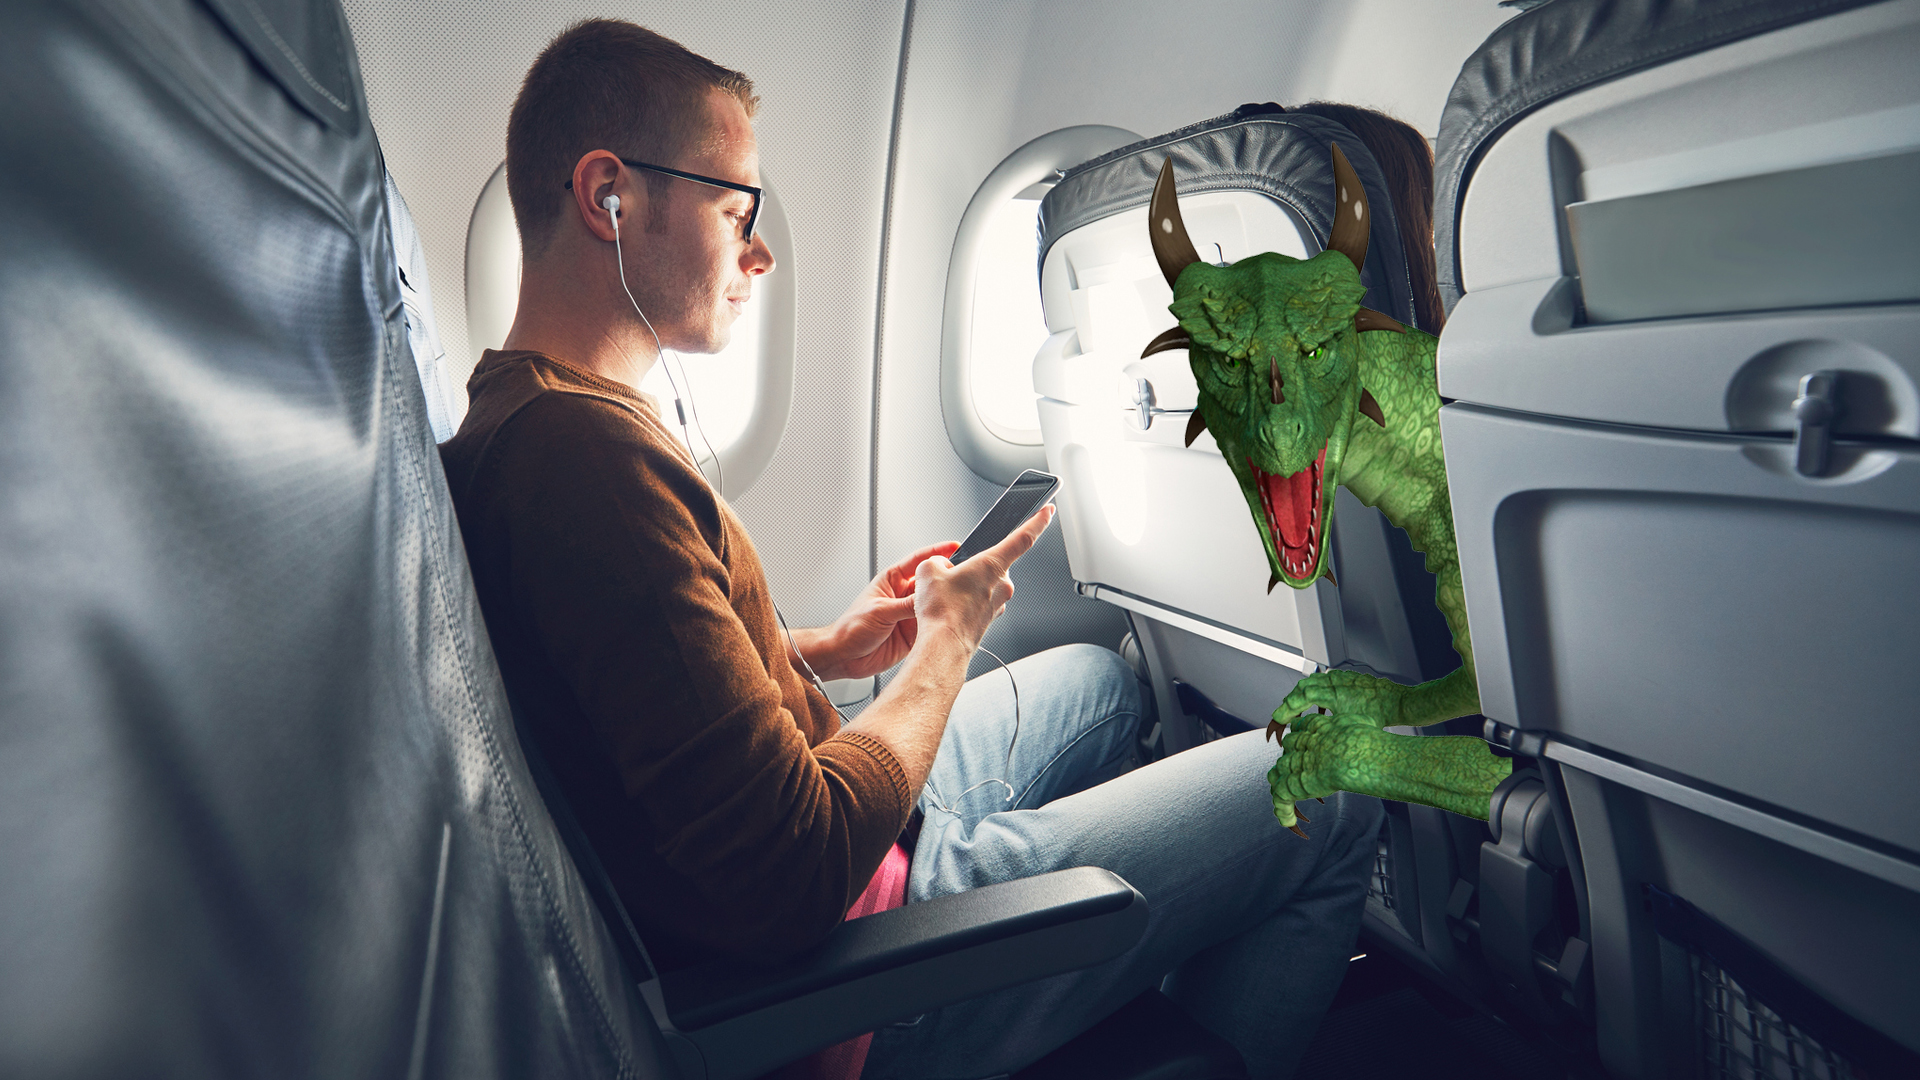 A dragon enjoying a flight on an aeroplane 